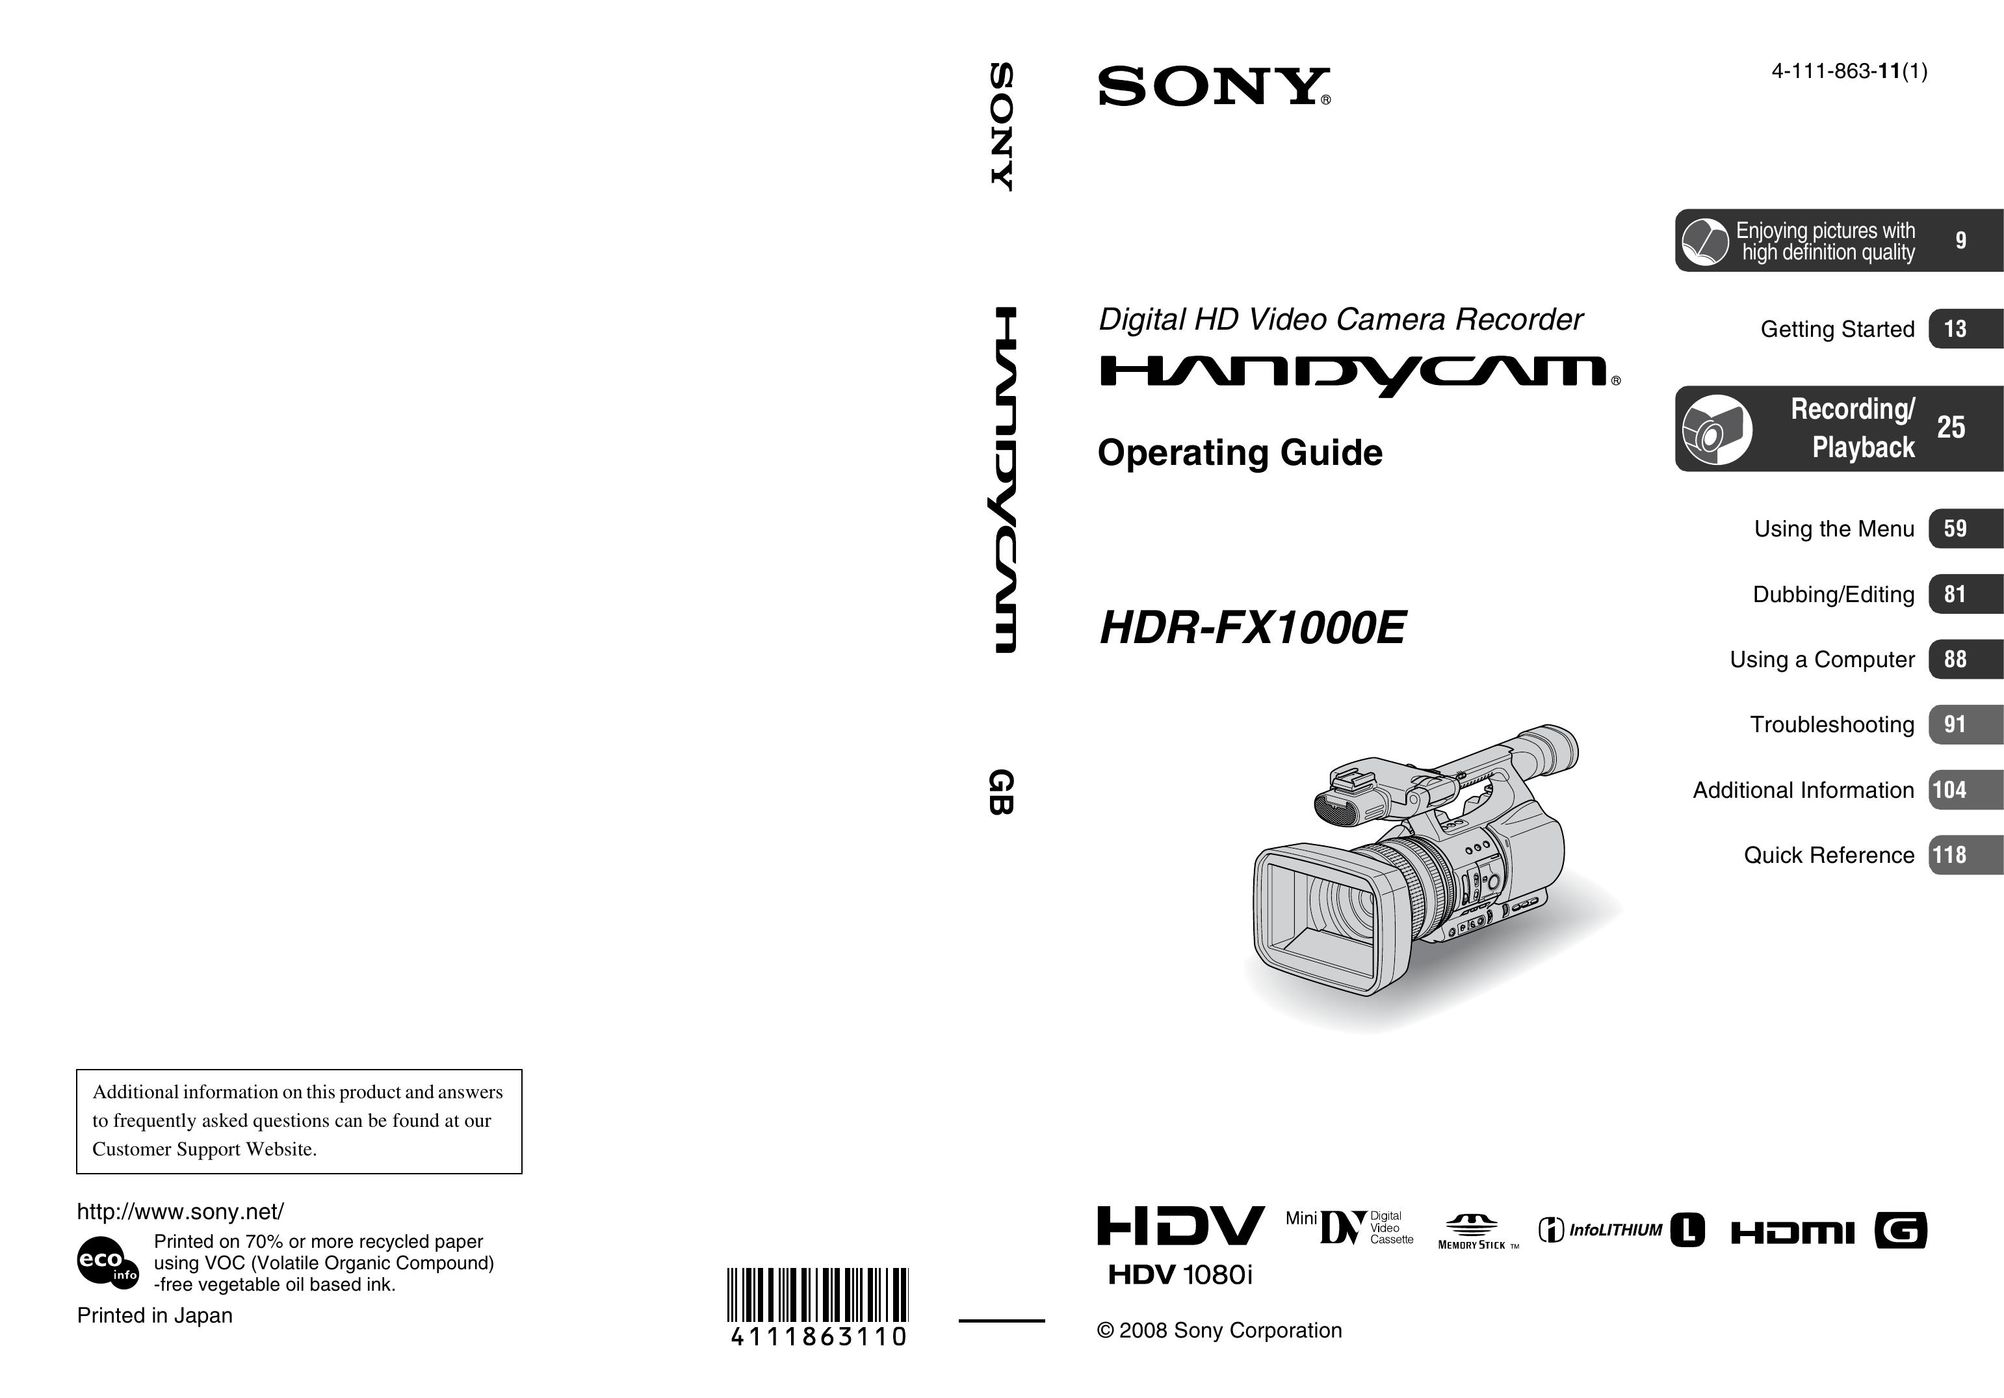 Sony HDR-FX1000E DVR User Manual